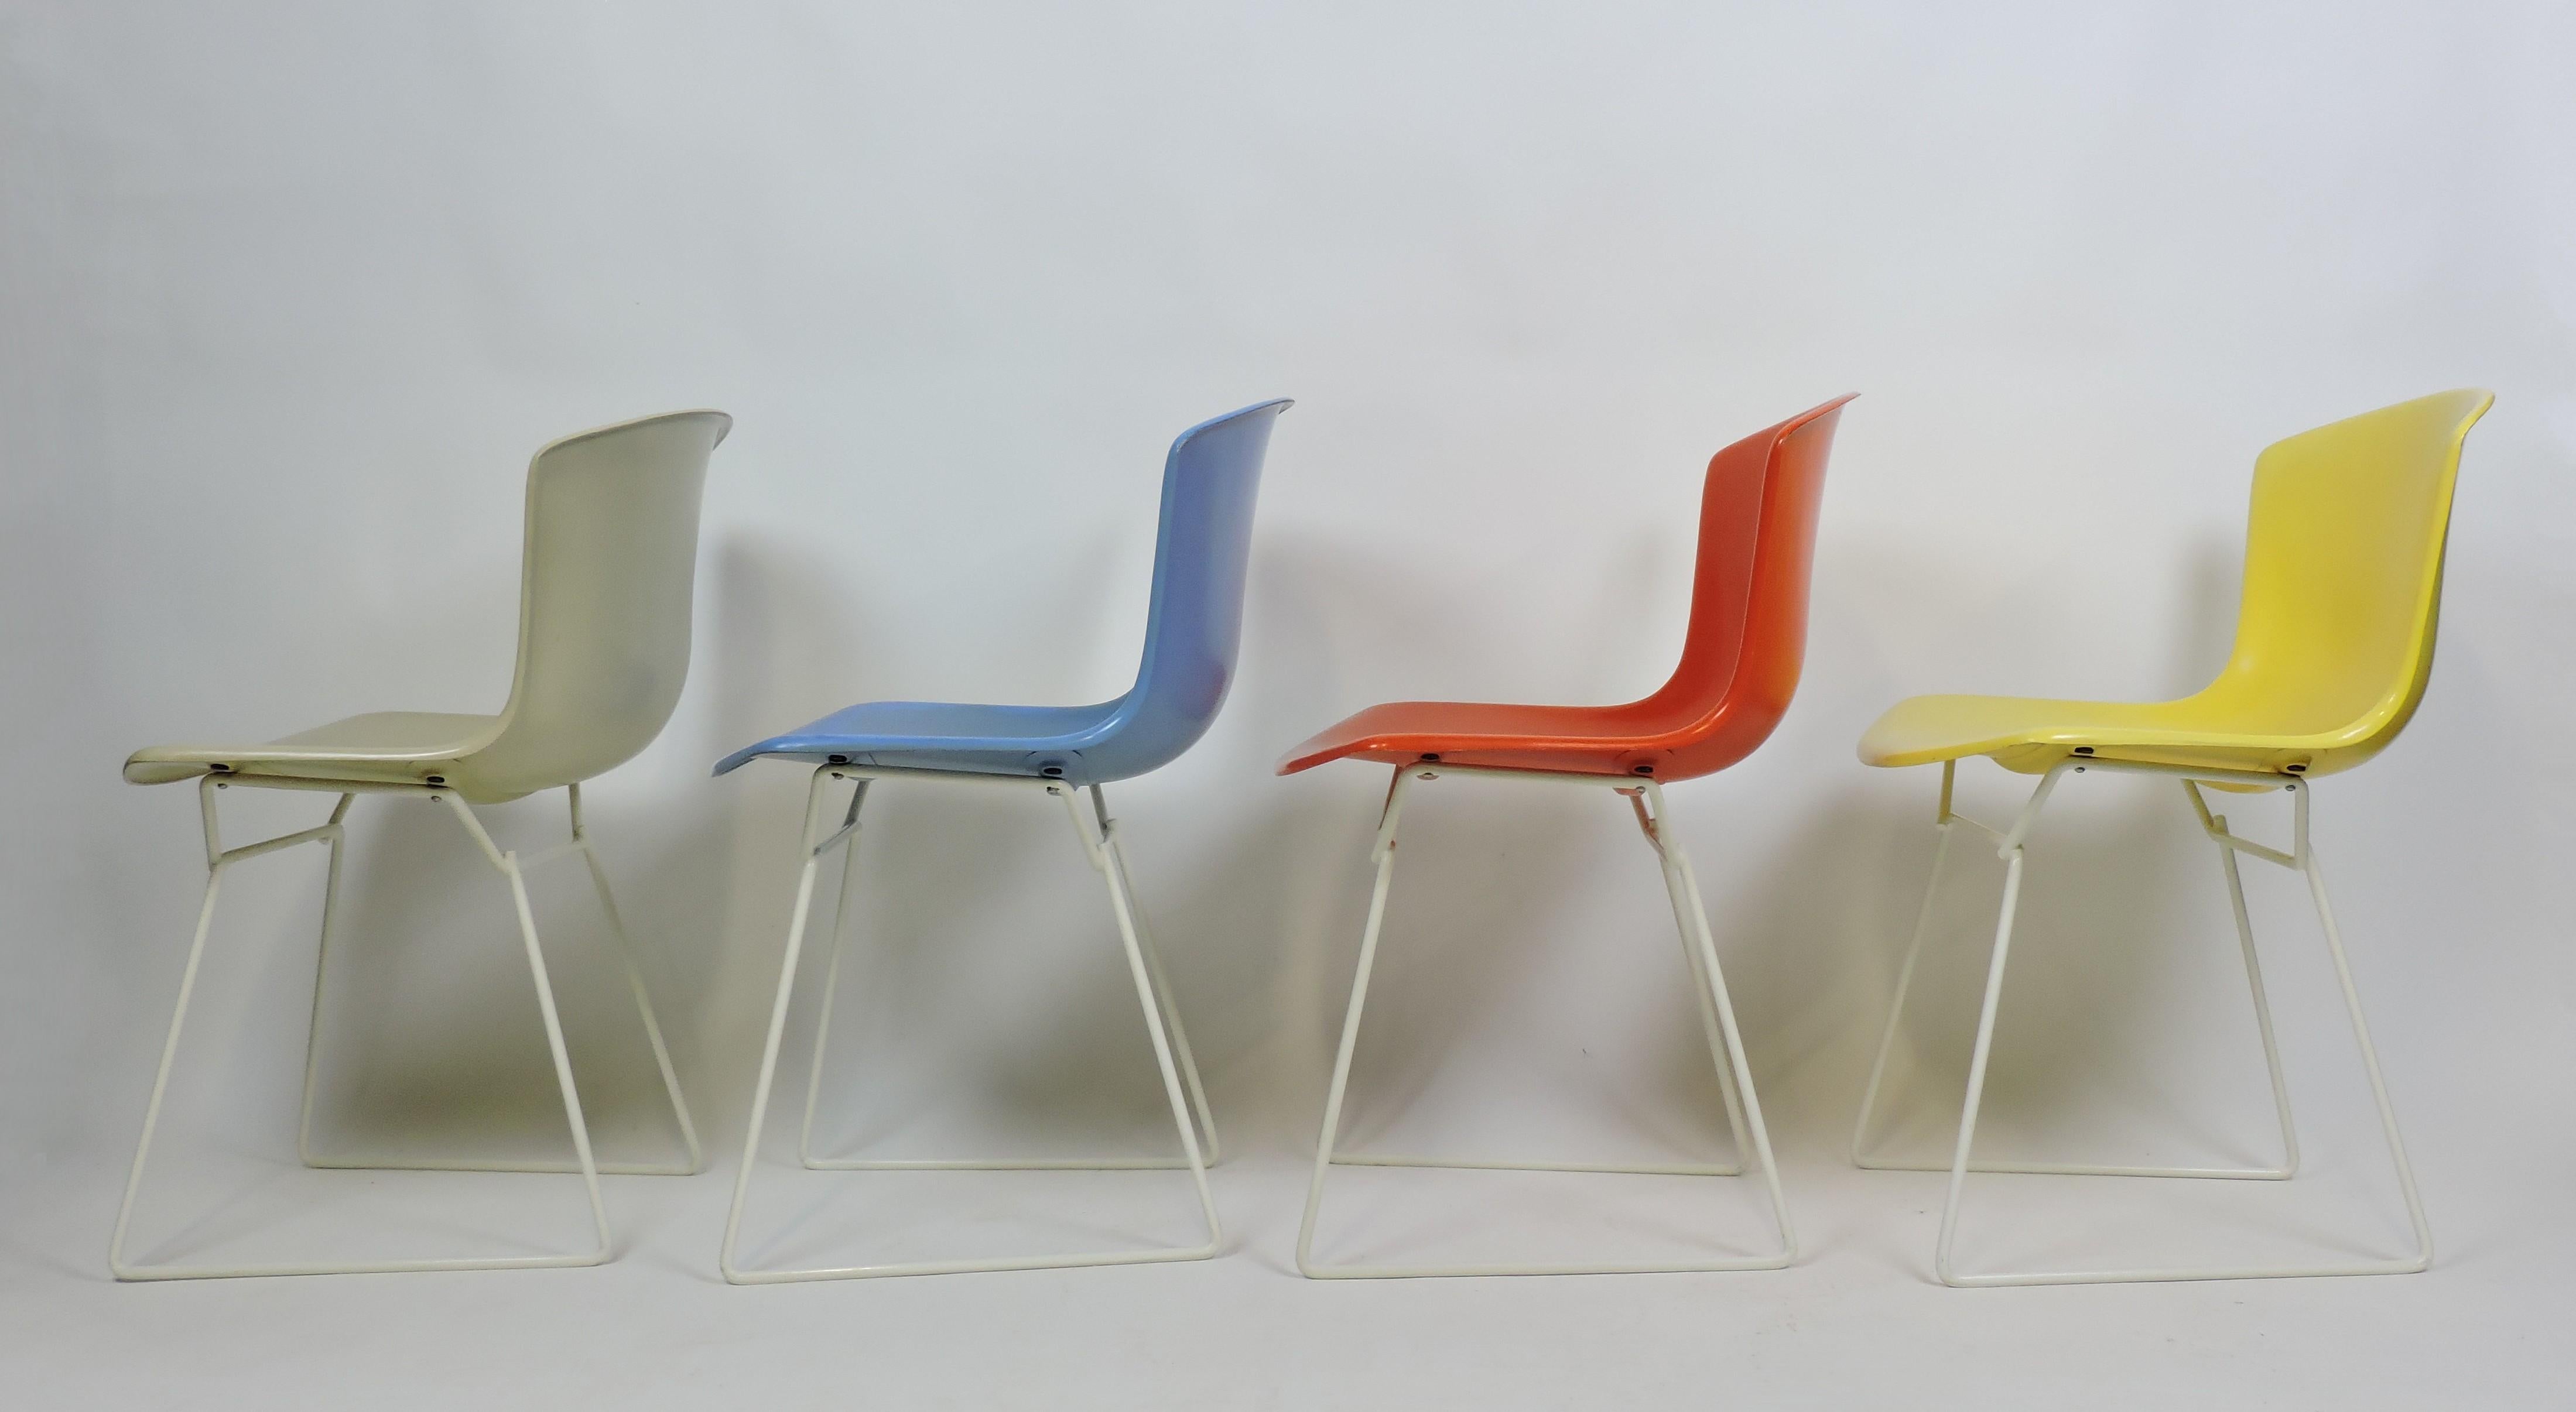 Ensemble de quatre chaises latérales en coquille moulée conçues par Harry Bertoia et fabriquées par Knoll. Lancé à l'origine en 1960, cet ensemble très ancien date de 1963 et comprend quatre couleurs - beige, bleu, rouge, jaune - sur un cadre blanc